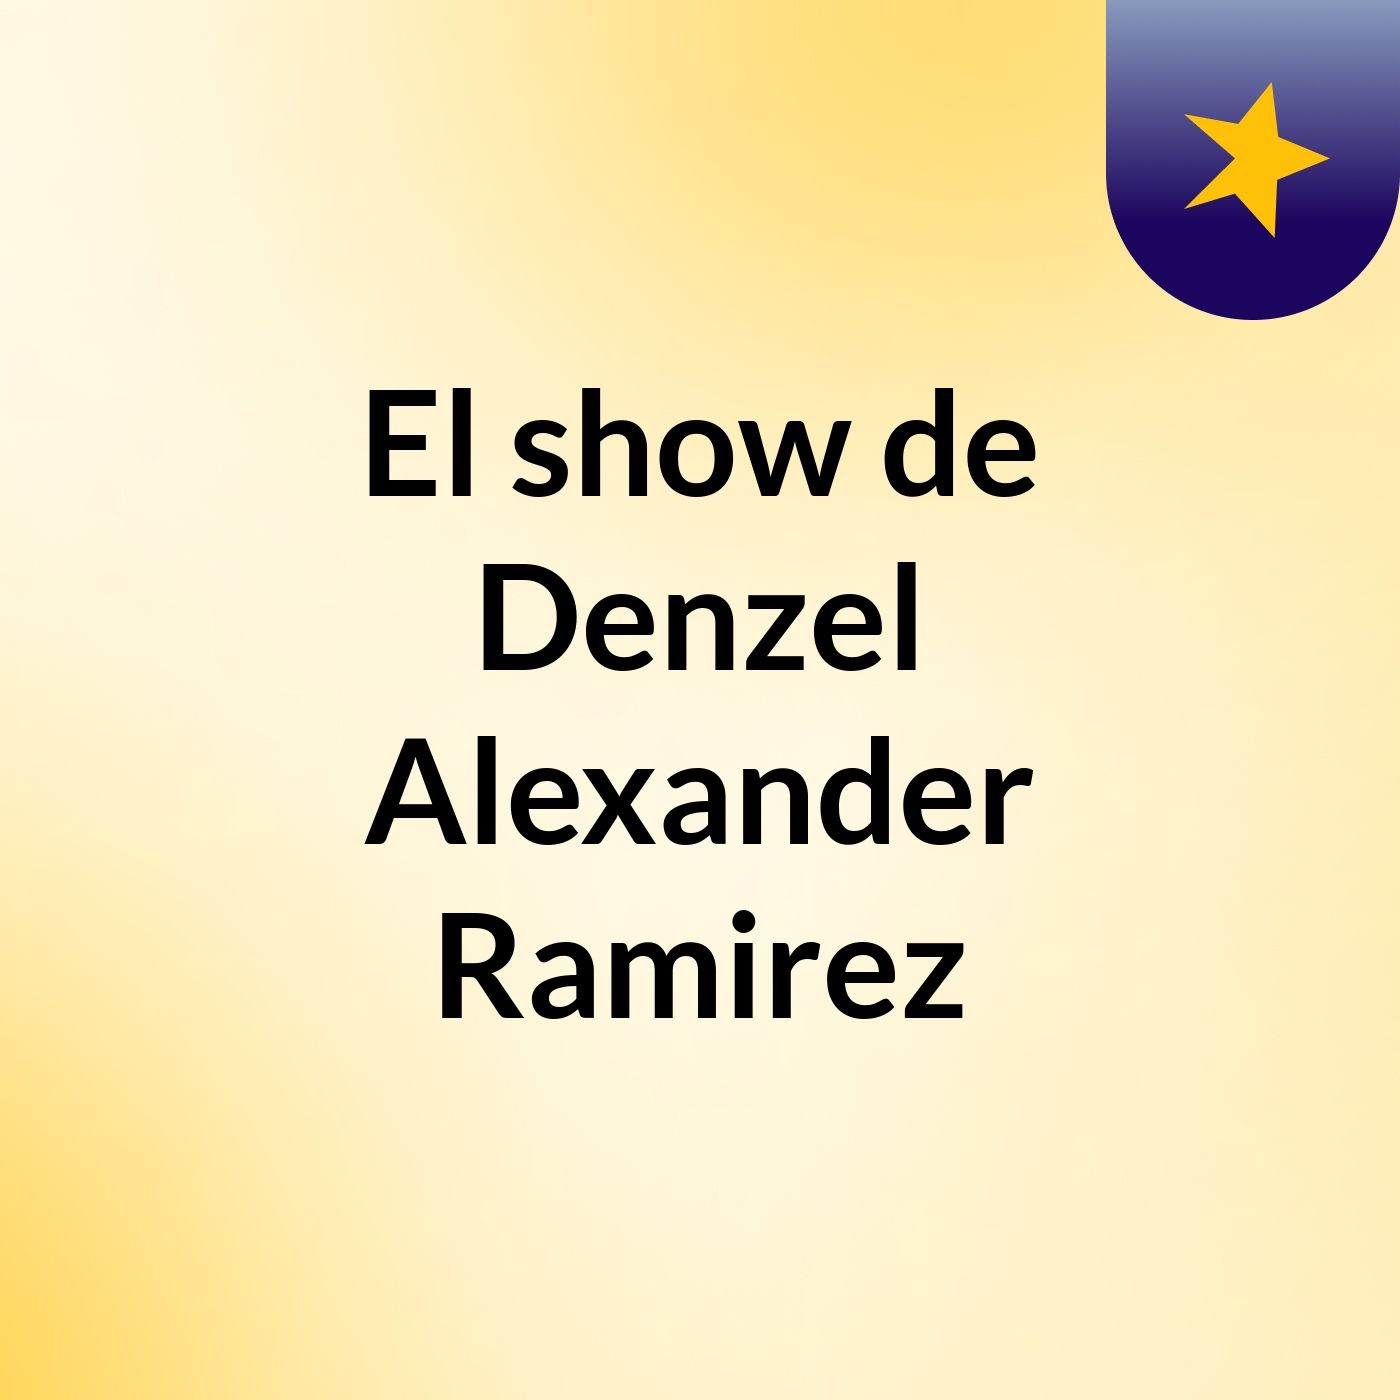 El show de Denzel Alexander Ramirez